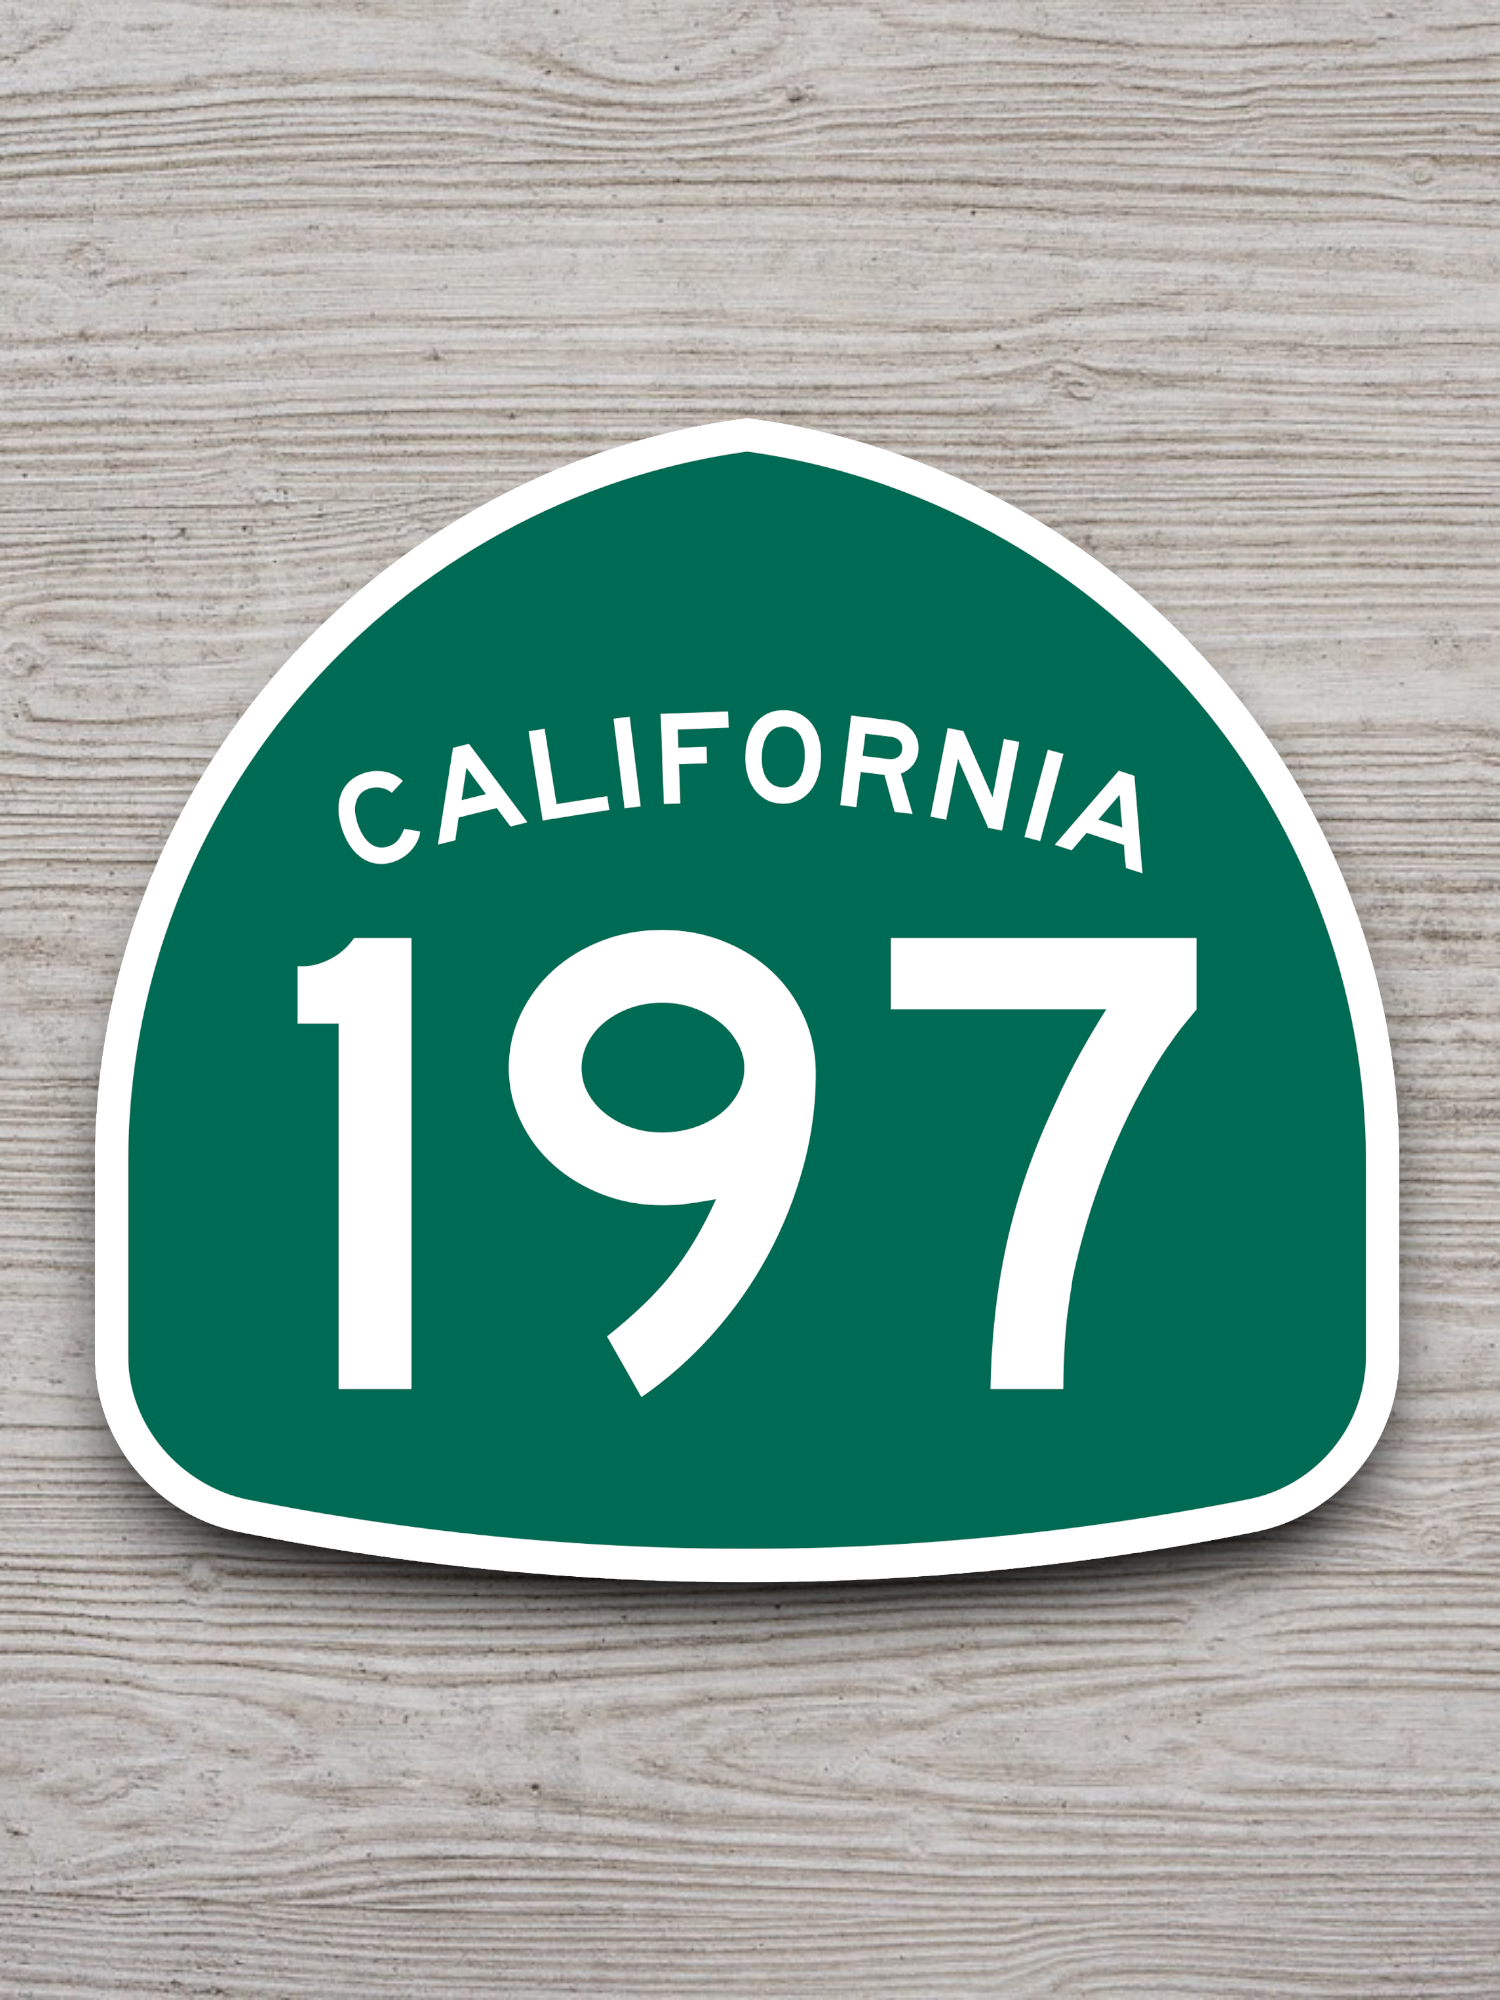 California State Route 197 Sticker